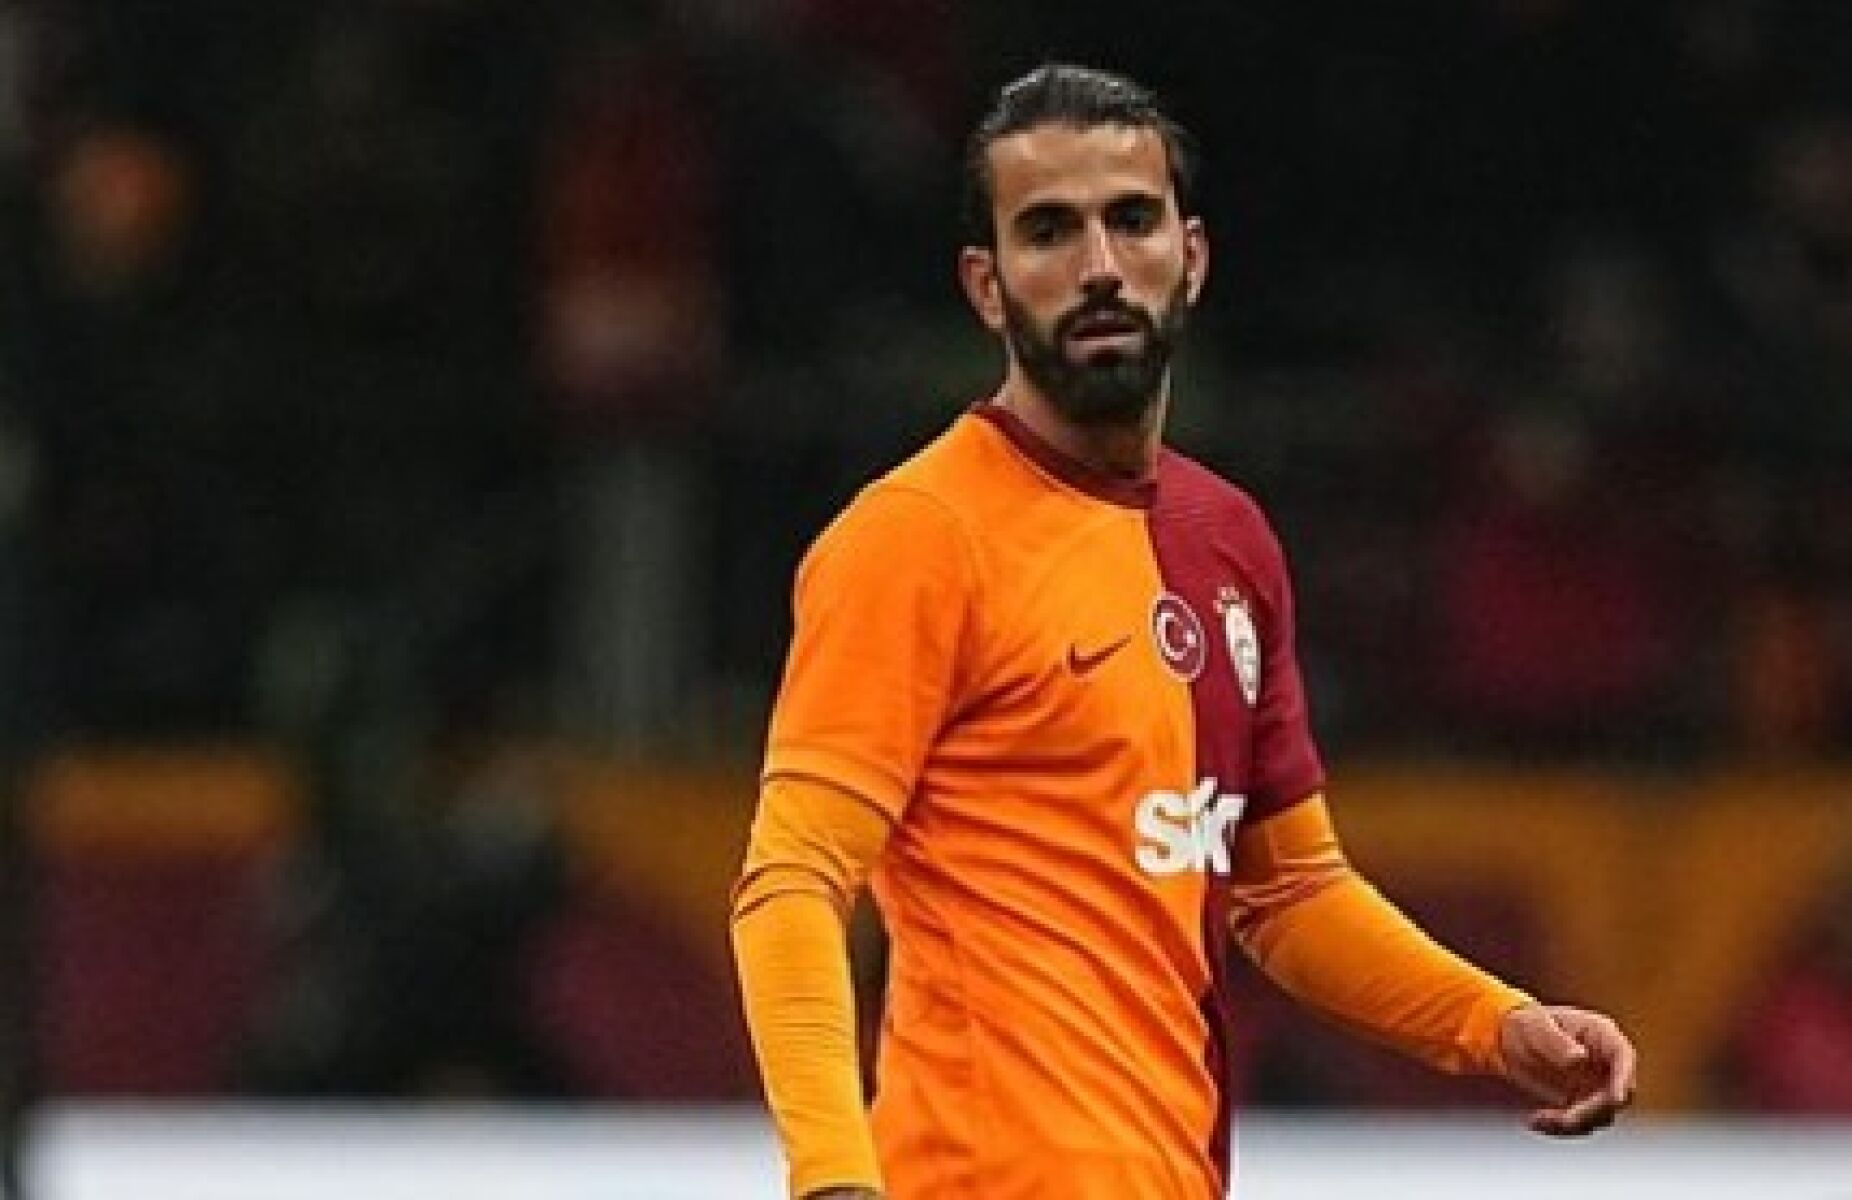 Sérgio Oliveira "regressa" aos treinos, após discussão com treinador, para Galatasaray evitar processo